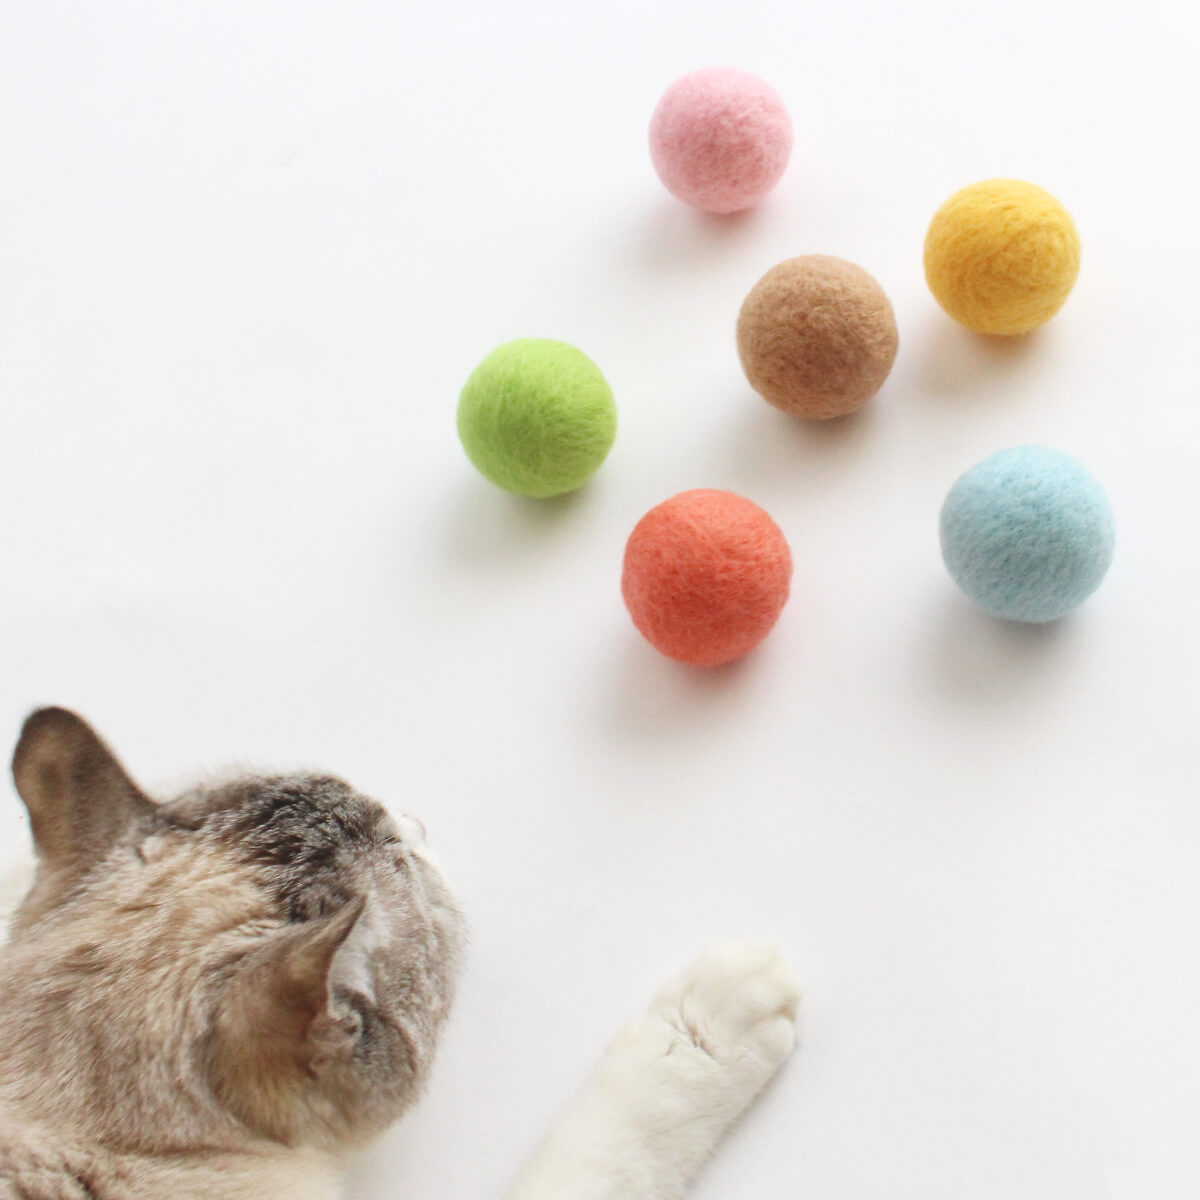 国産グッズでストレス解消 贈物 シンプルでオシャレな遊び道具はギフトにおすすめ 日本製 猫 おもちゃ ねこずきころころ 羊毛 ボール LARGE 格安 価格でご提供いたします 1個